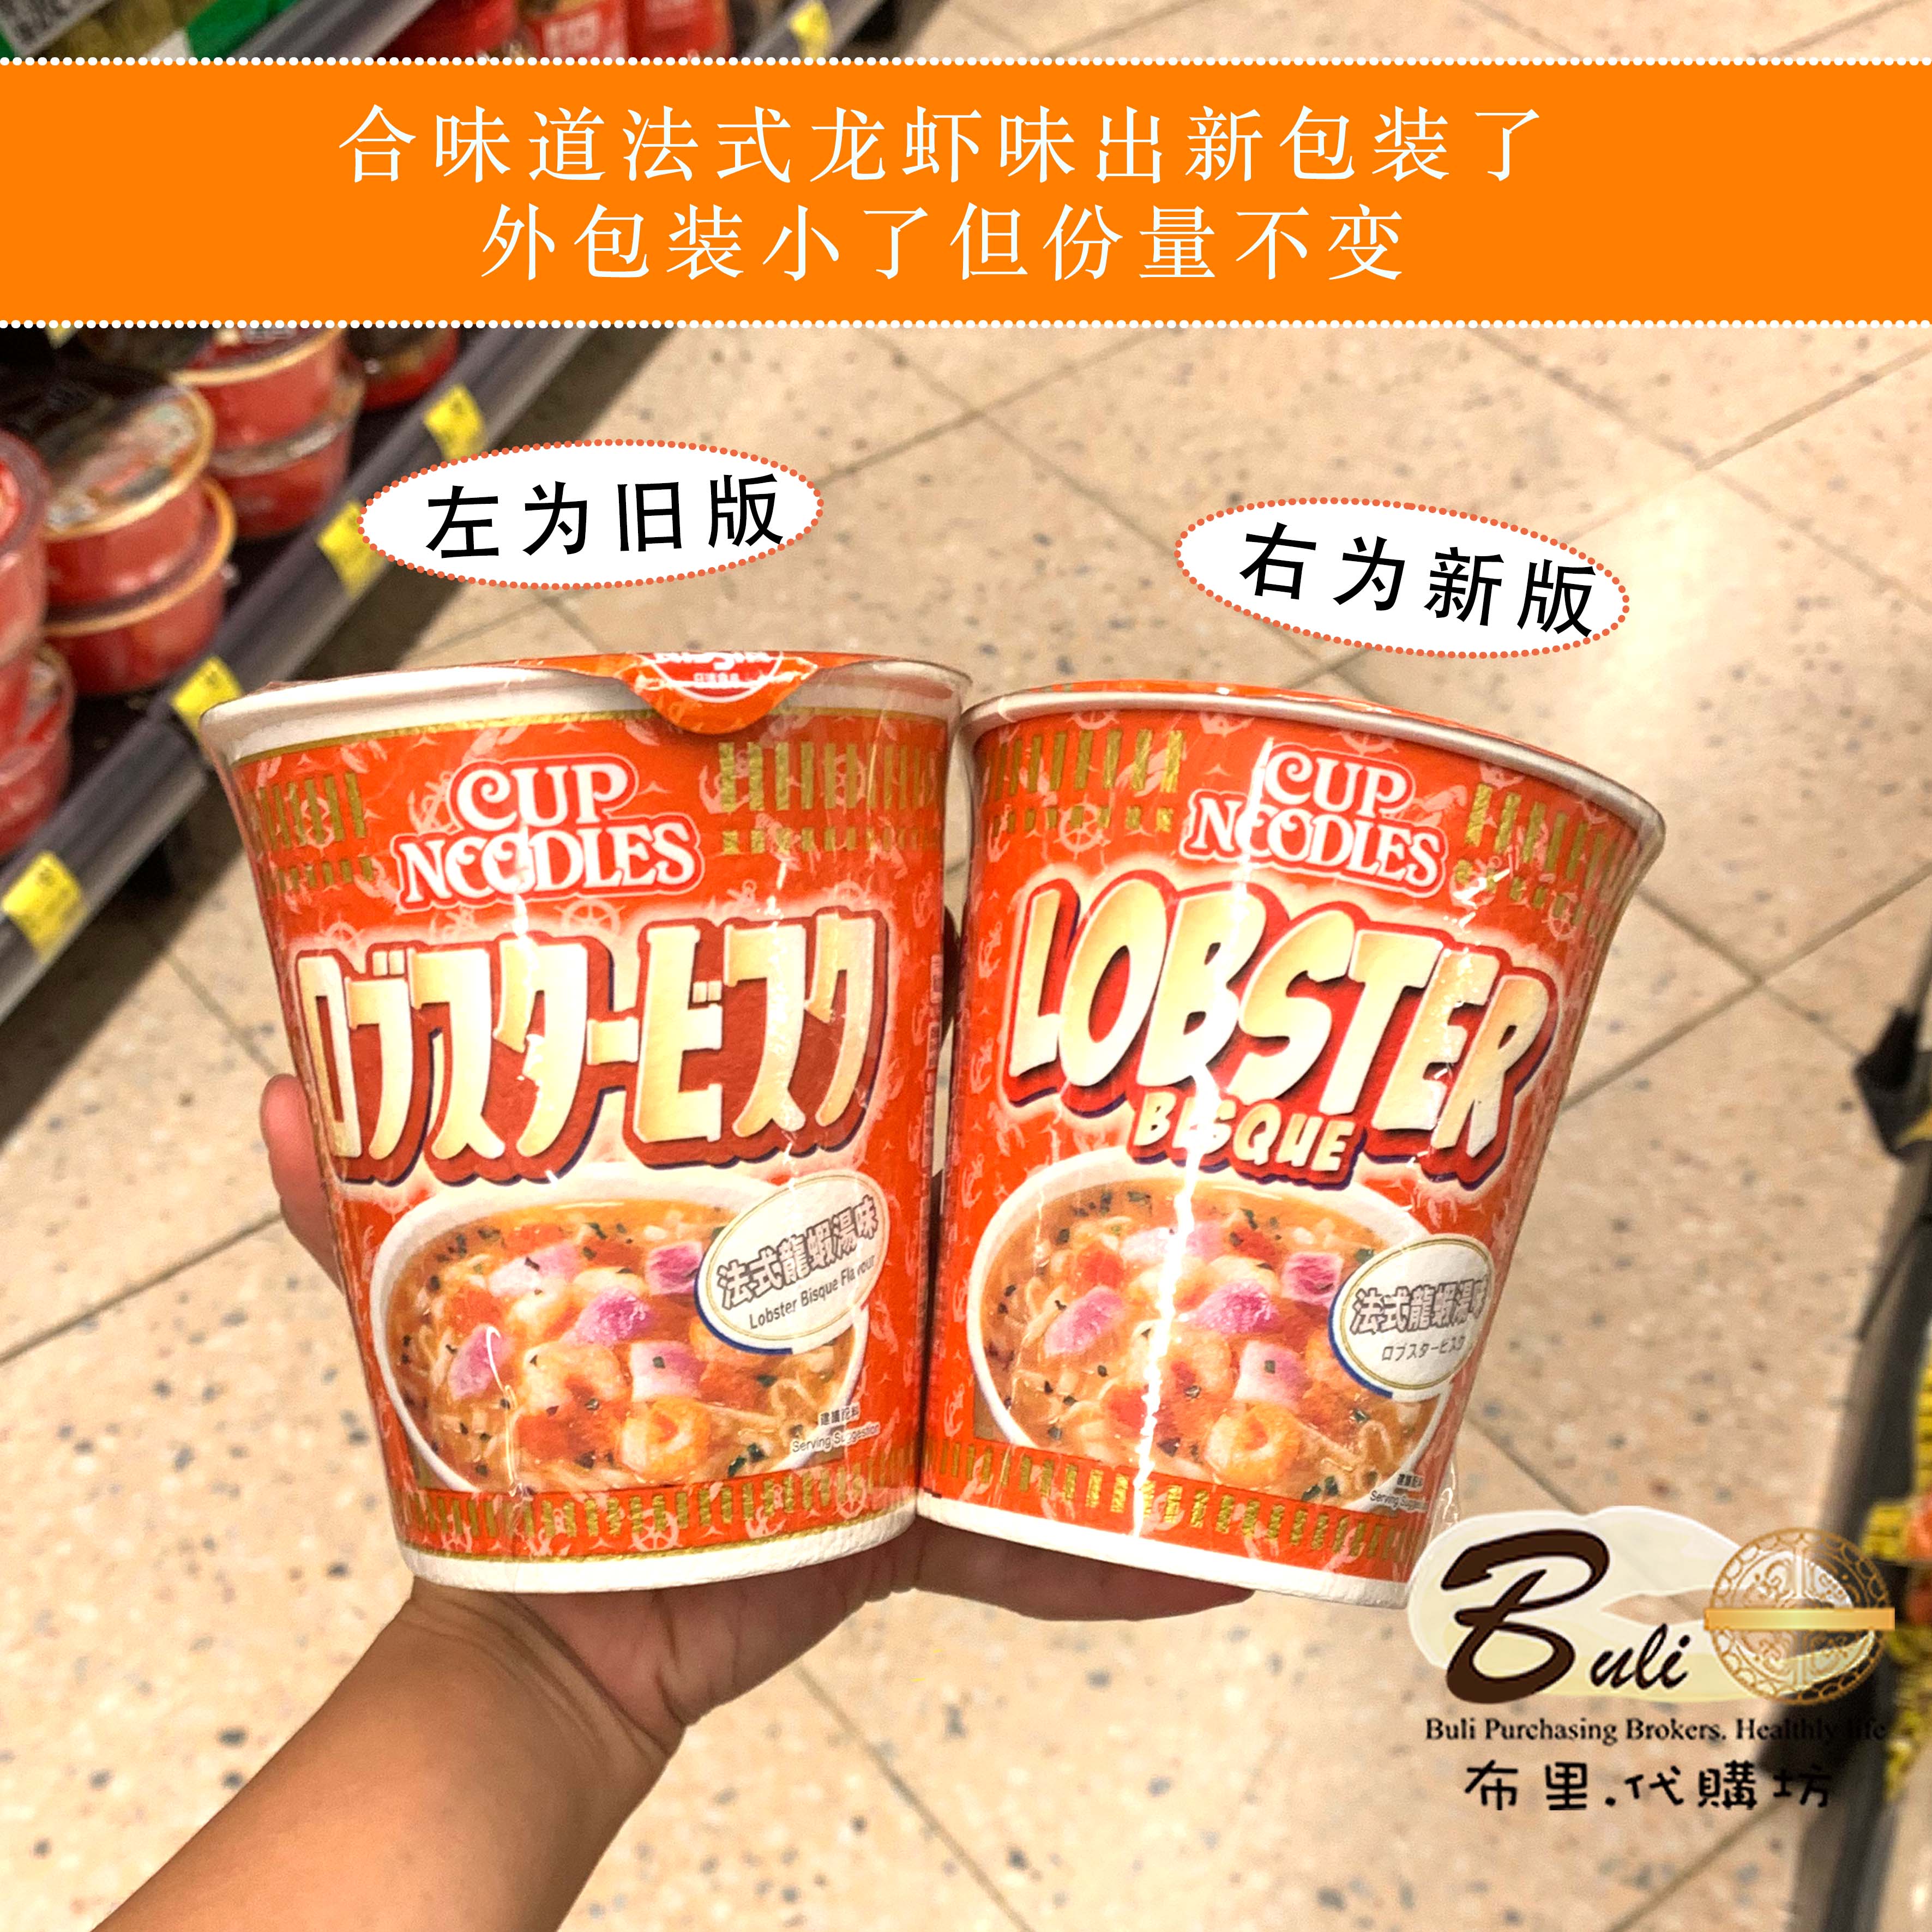 新品上市香港进口日清合味道杯面法式龙虾汤味方便面港版繁体字